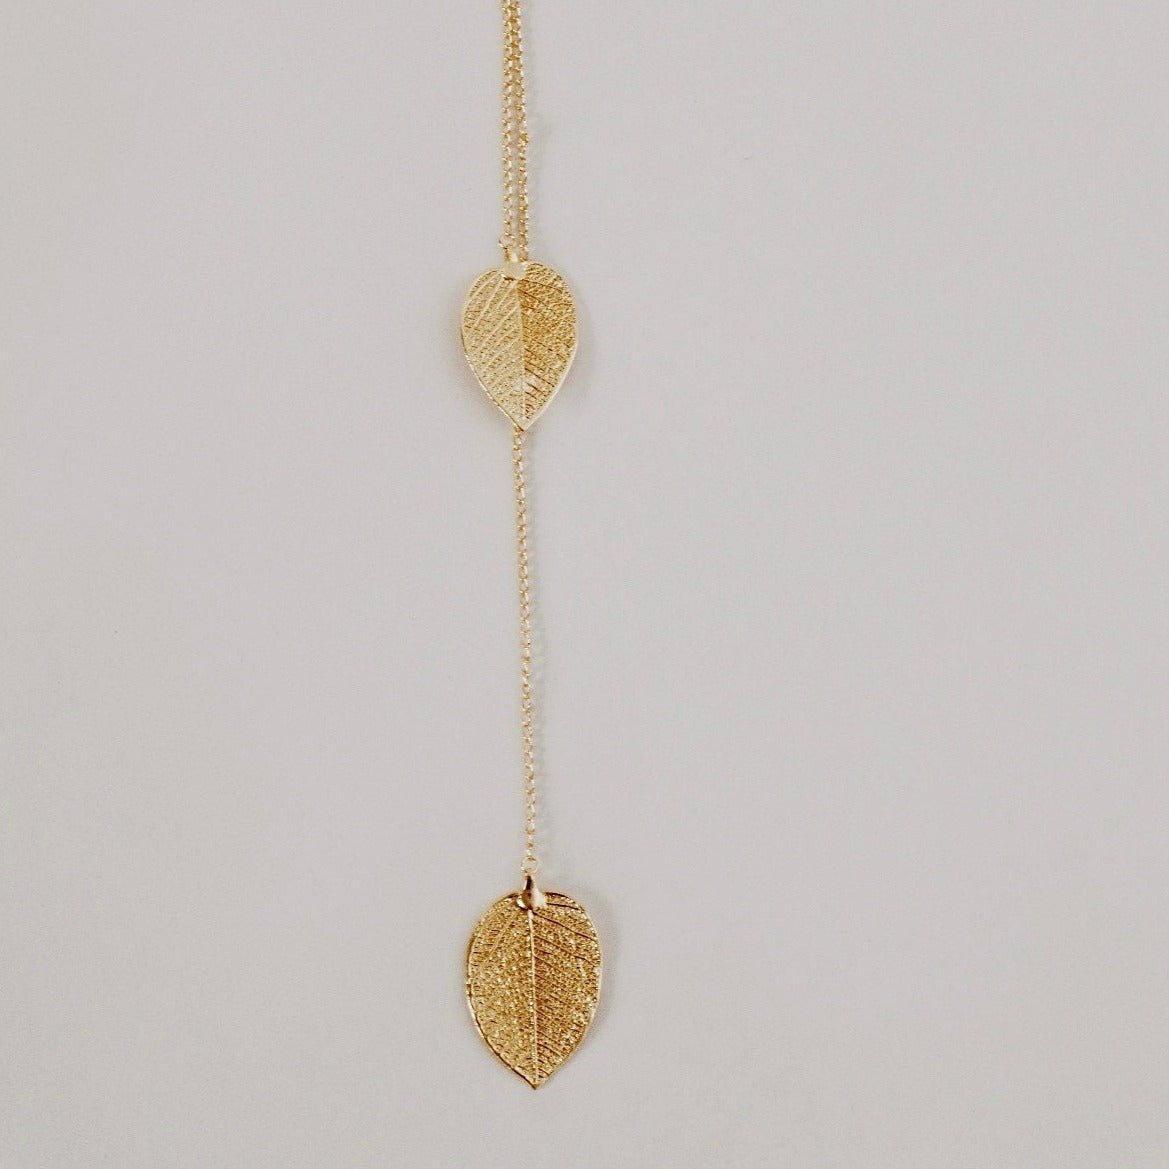 Cerrado Leaves Necklace (adjustable)